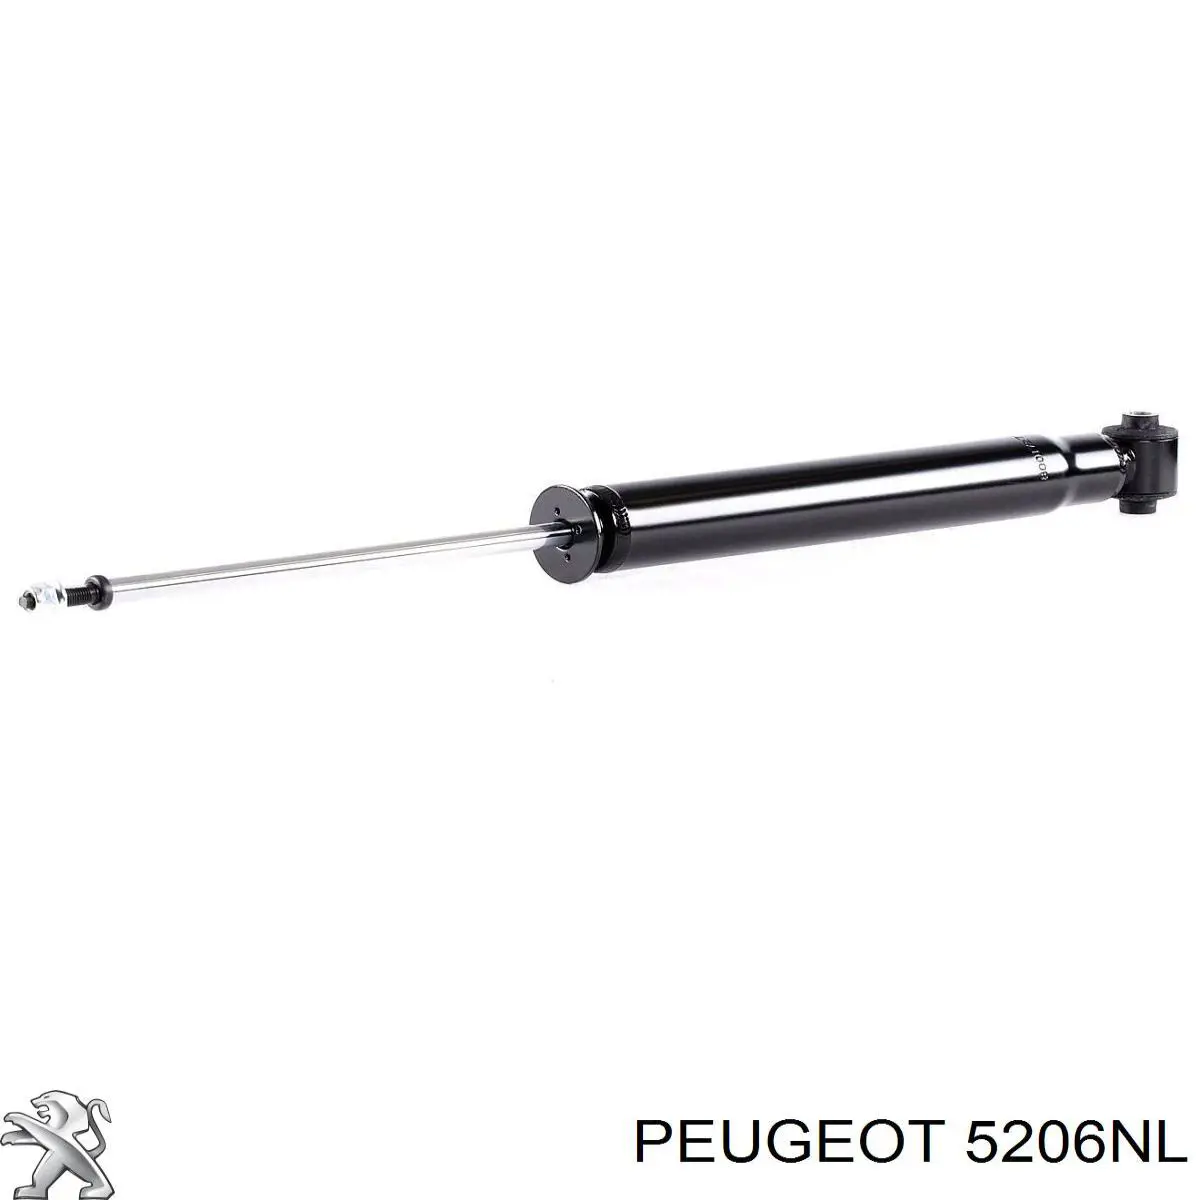 5206NL Peugeot/Citroen amortiguador trasero